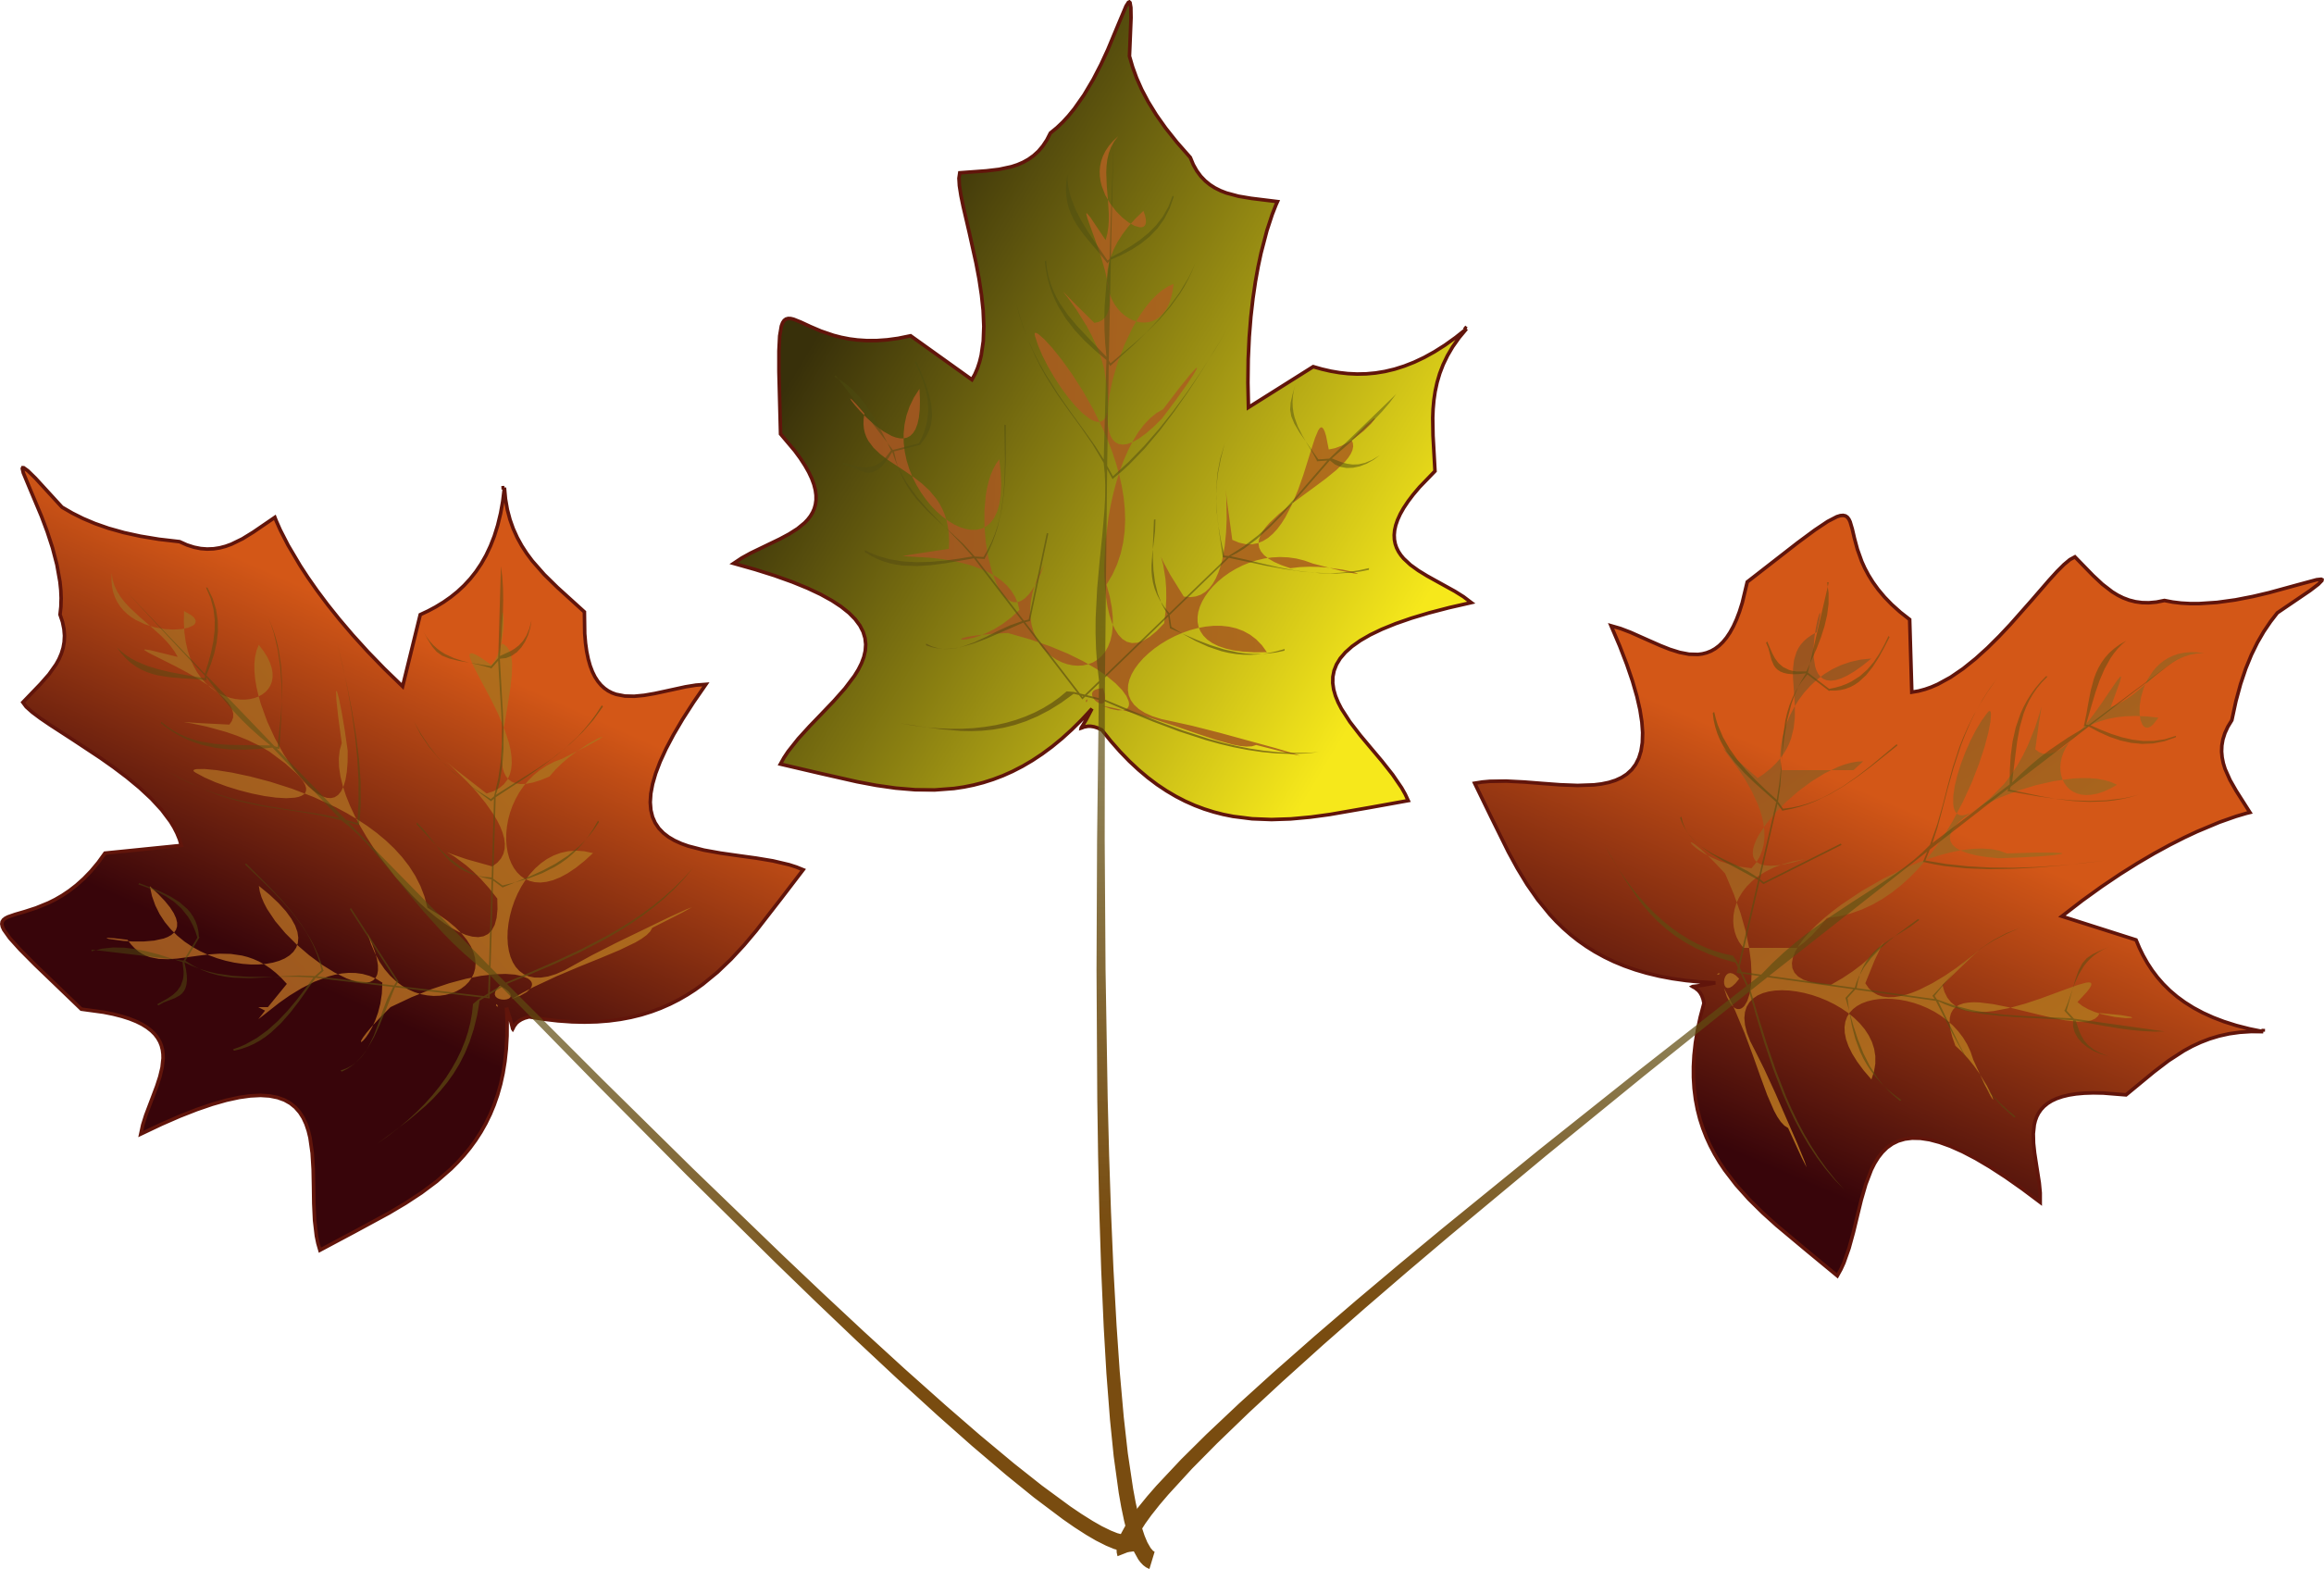 Drawn Maple Leaf Transparent - 3 Maple Leafs Drawing (2511x1695)